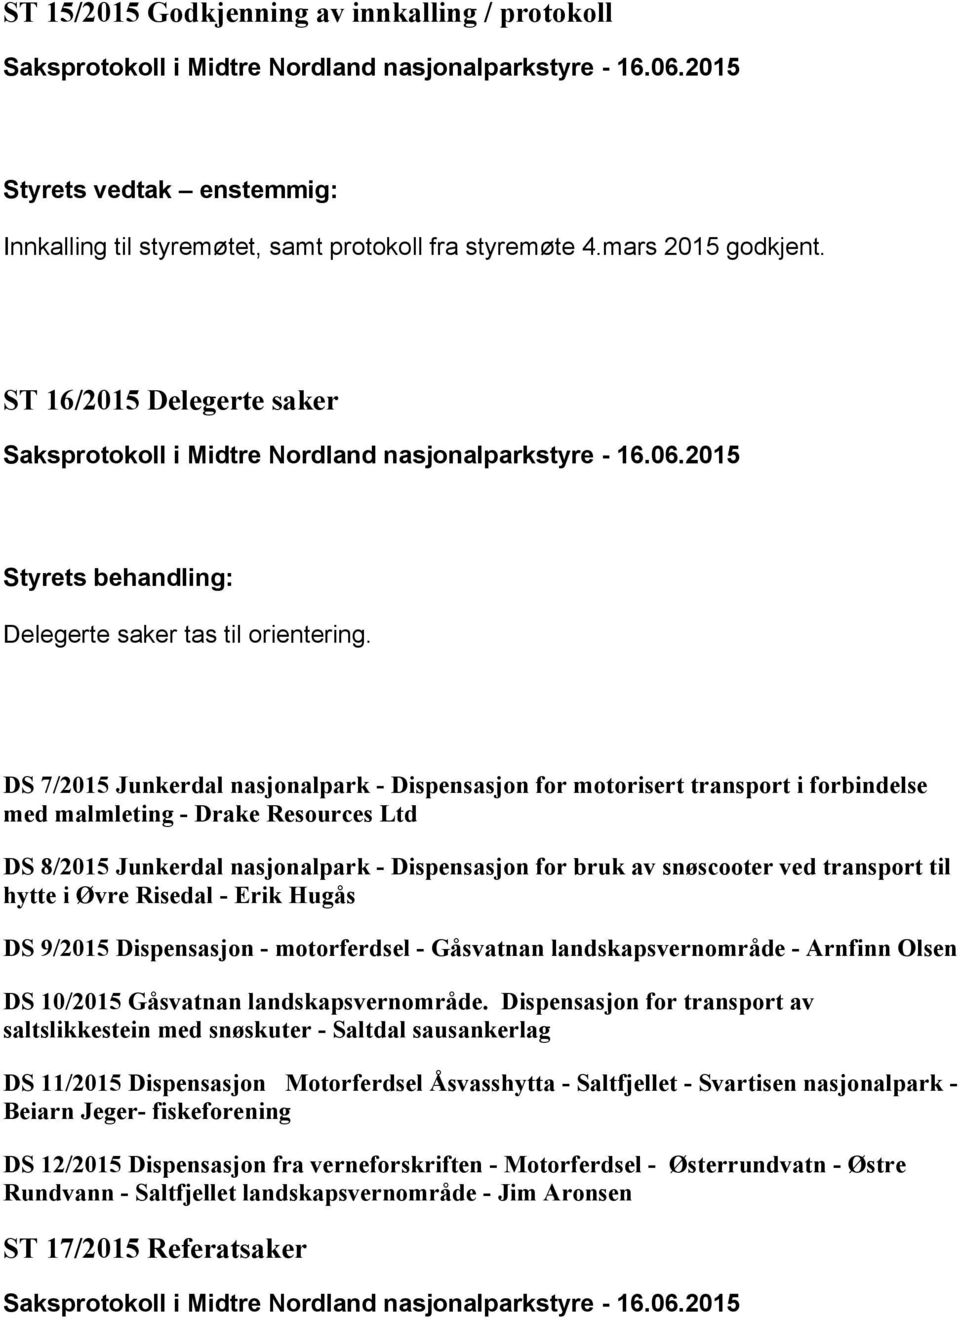 DS 7/2015 Junkerdal nasjonalpark - Dispensasjon for motorisert transport i forbindelse med malmleting - Drake Resources Ltd DS 8/2015 Junkerdal nasjonalpark - Dispensasjon for bruk av snøscooter ved